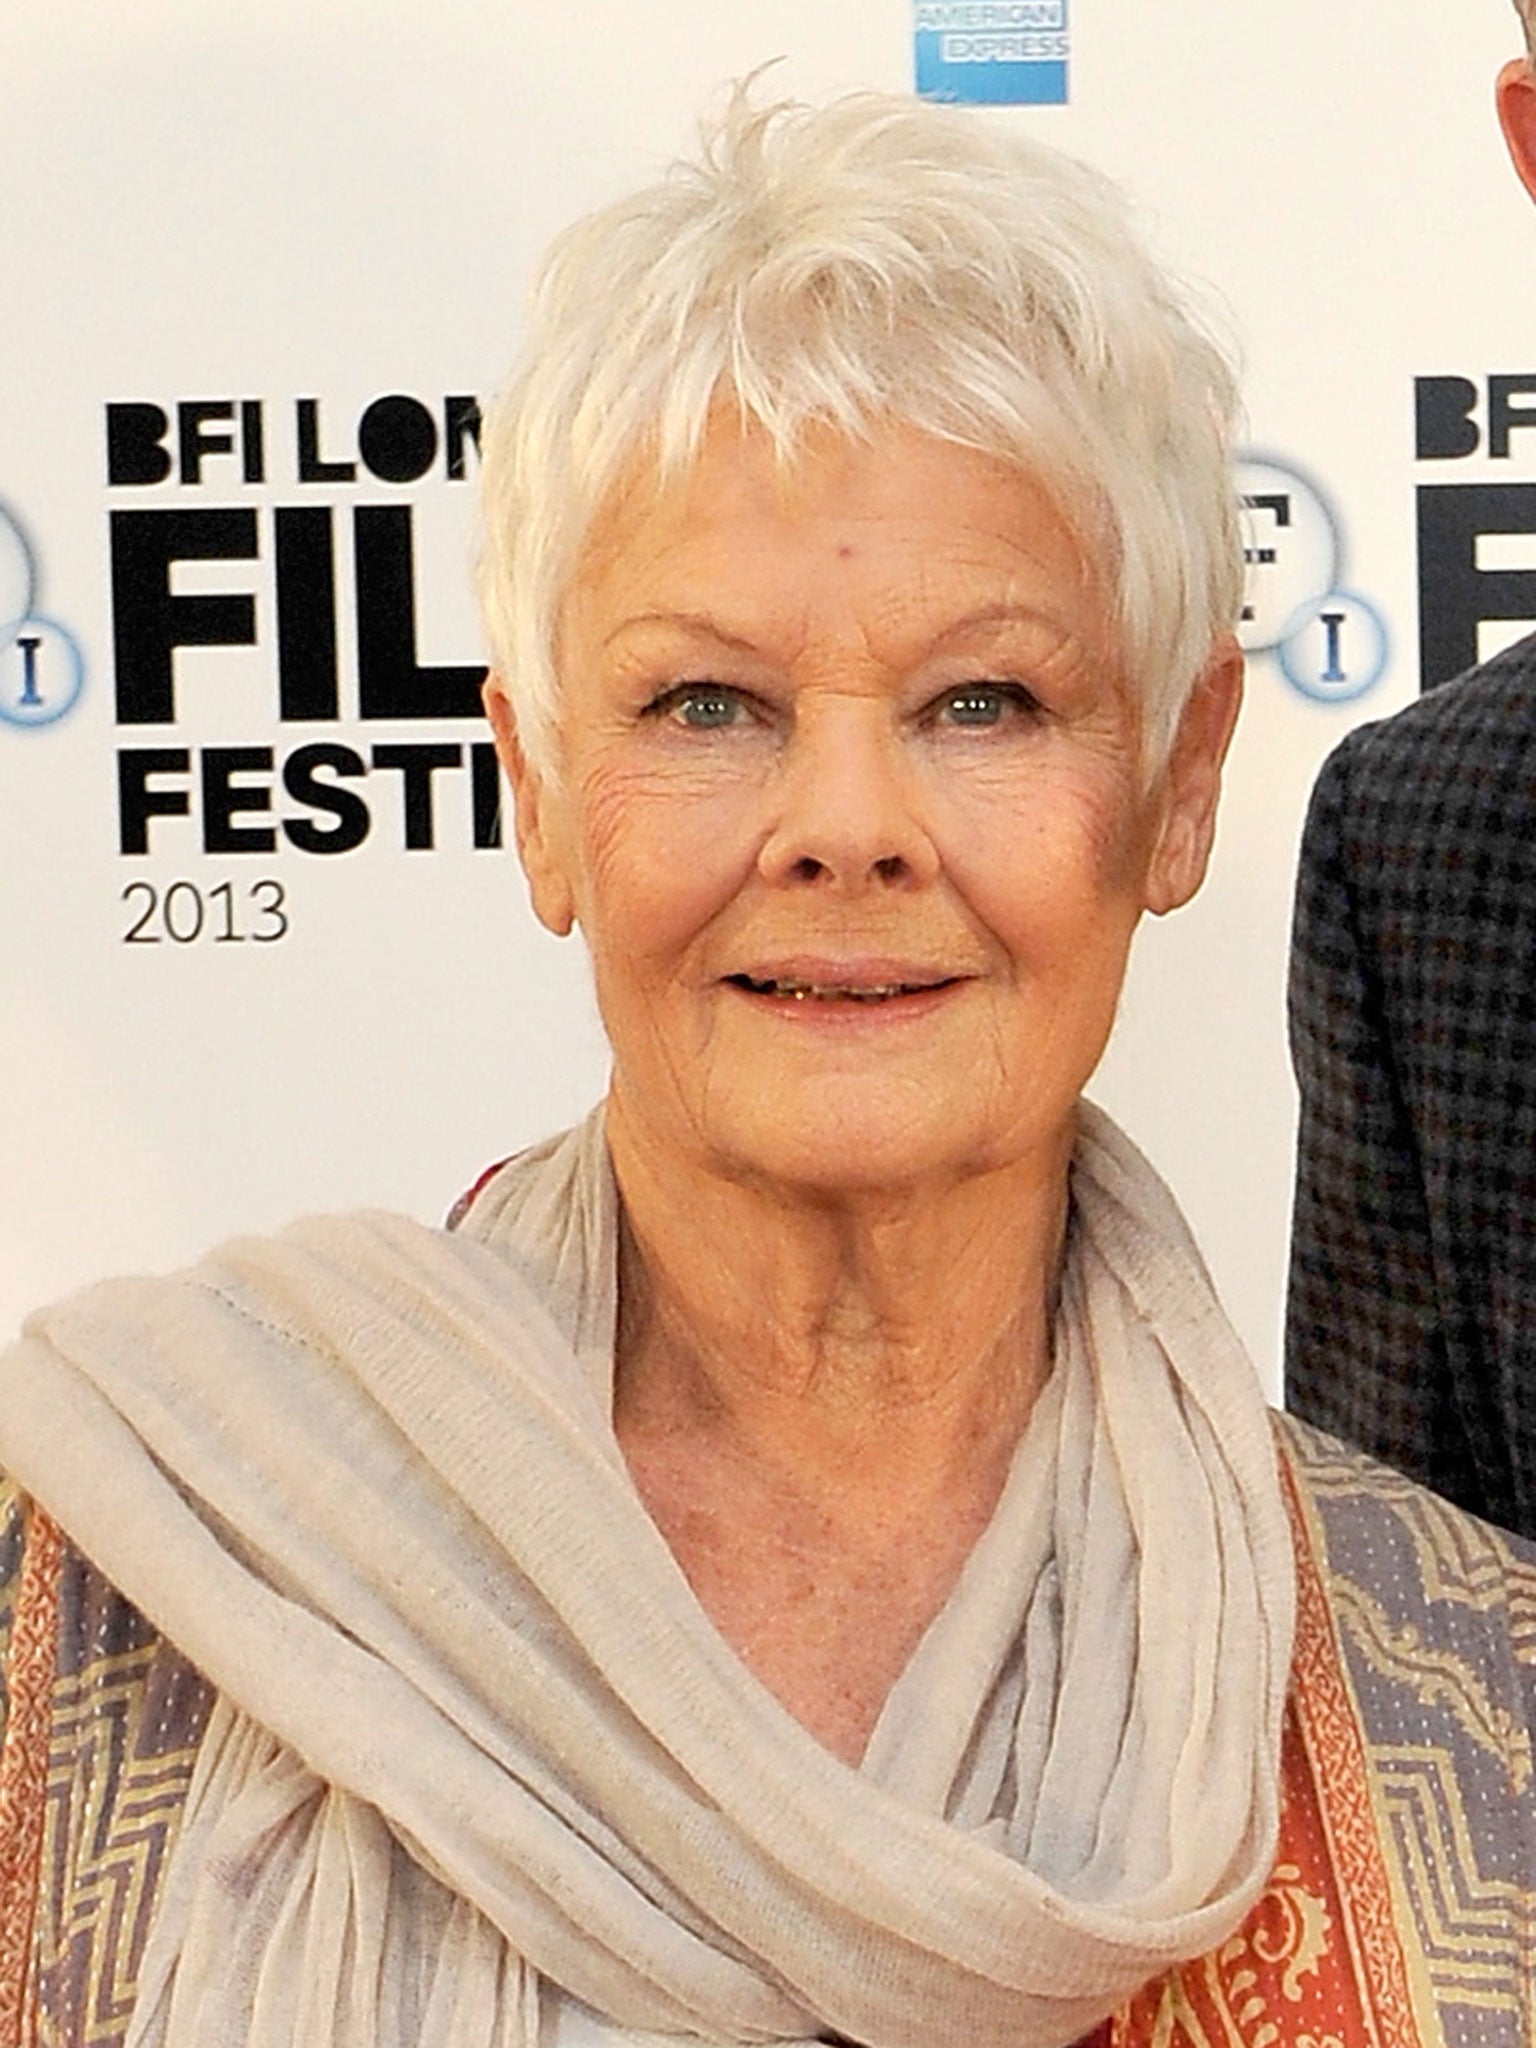 Judi Dench, Actress